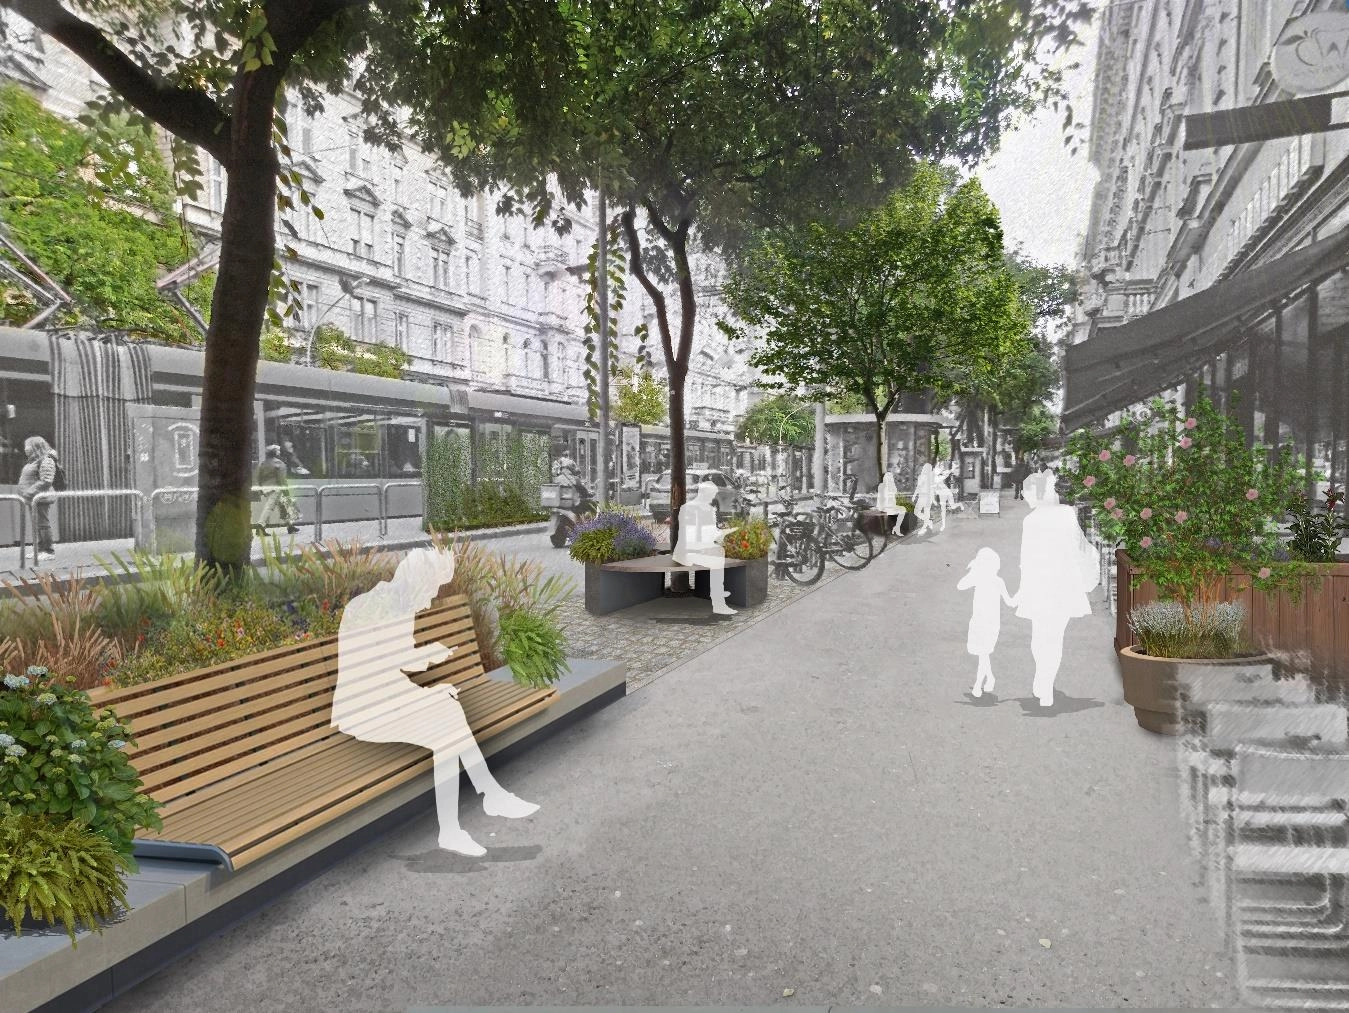 Nagykörút tanulmányterv: Cél pezsgő utcai életet biztosító rendezett gyalogos környezet megteremtése